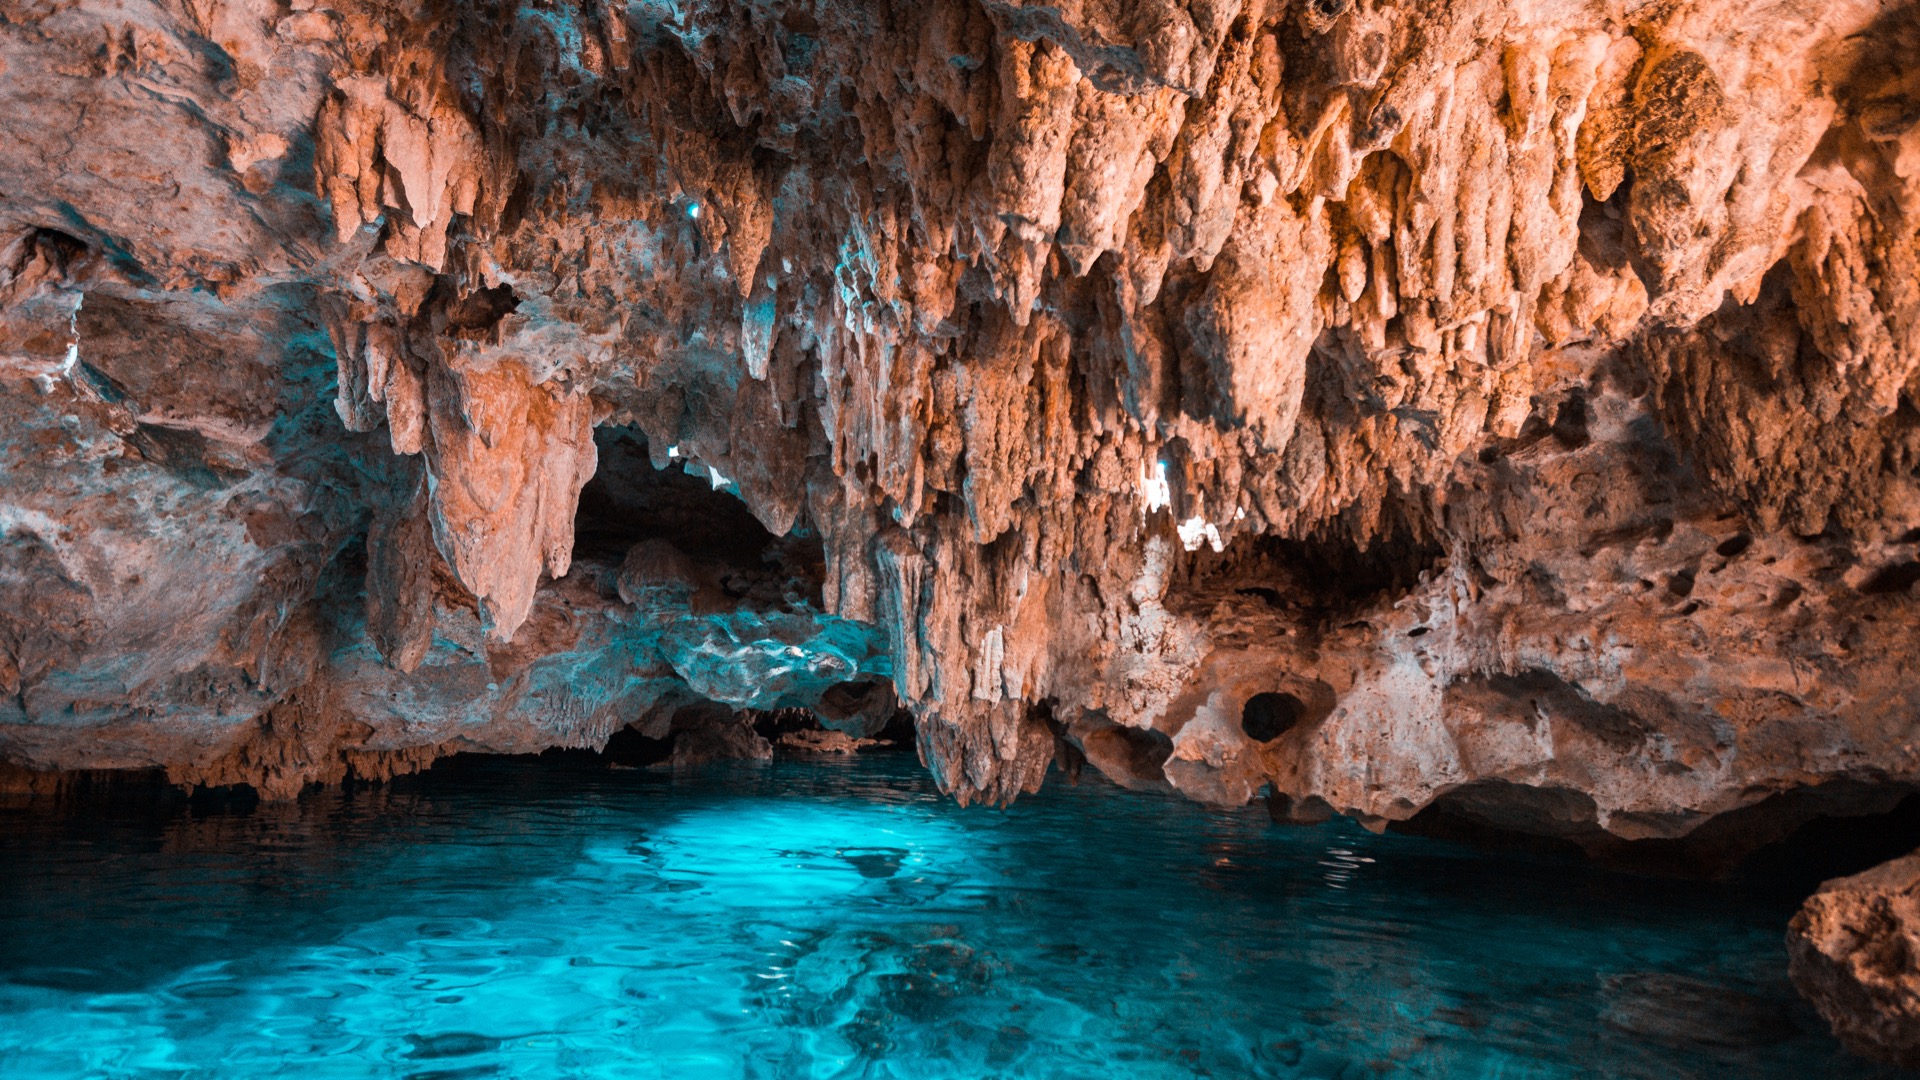 La grotte de Sistema Huautla au Mexique compte désormais plus de 100 kilomètres de galeries souterraines. © Tom H., Adobe Stock